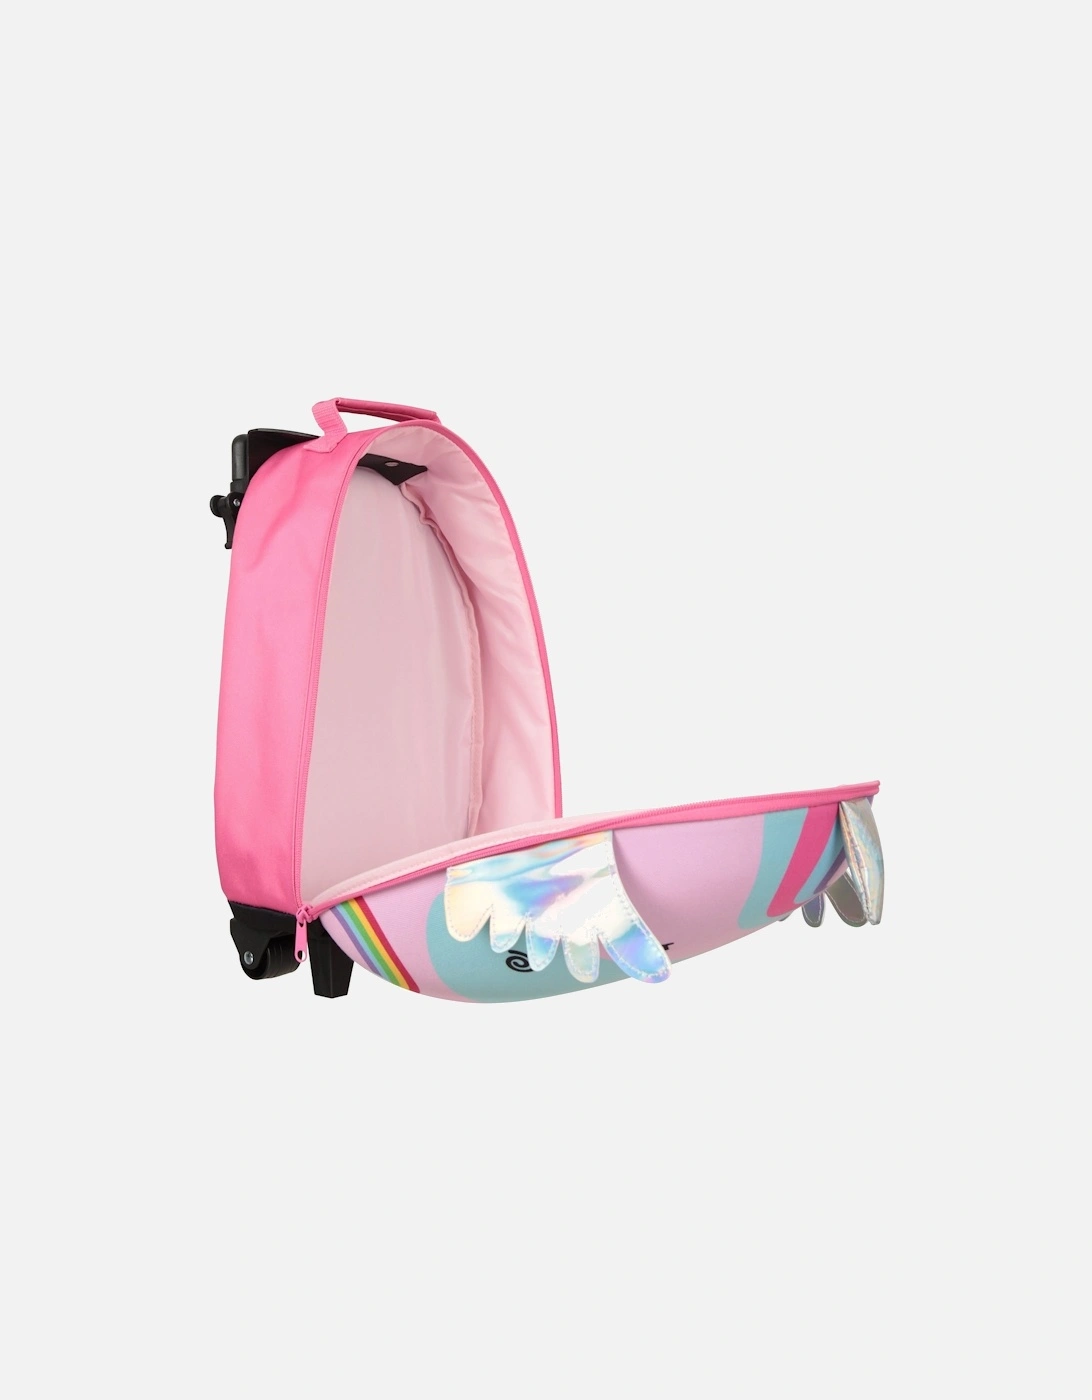 Childrens/Kids Unicorn 2 Wheeled Suitcase